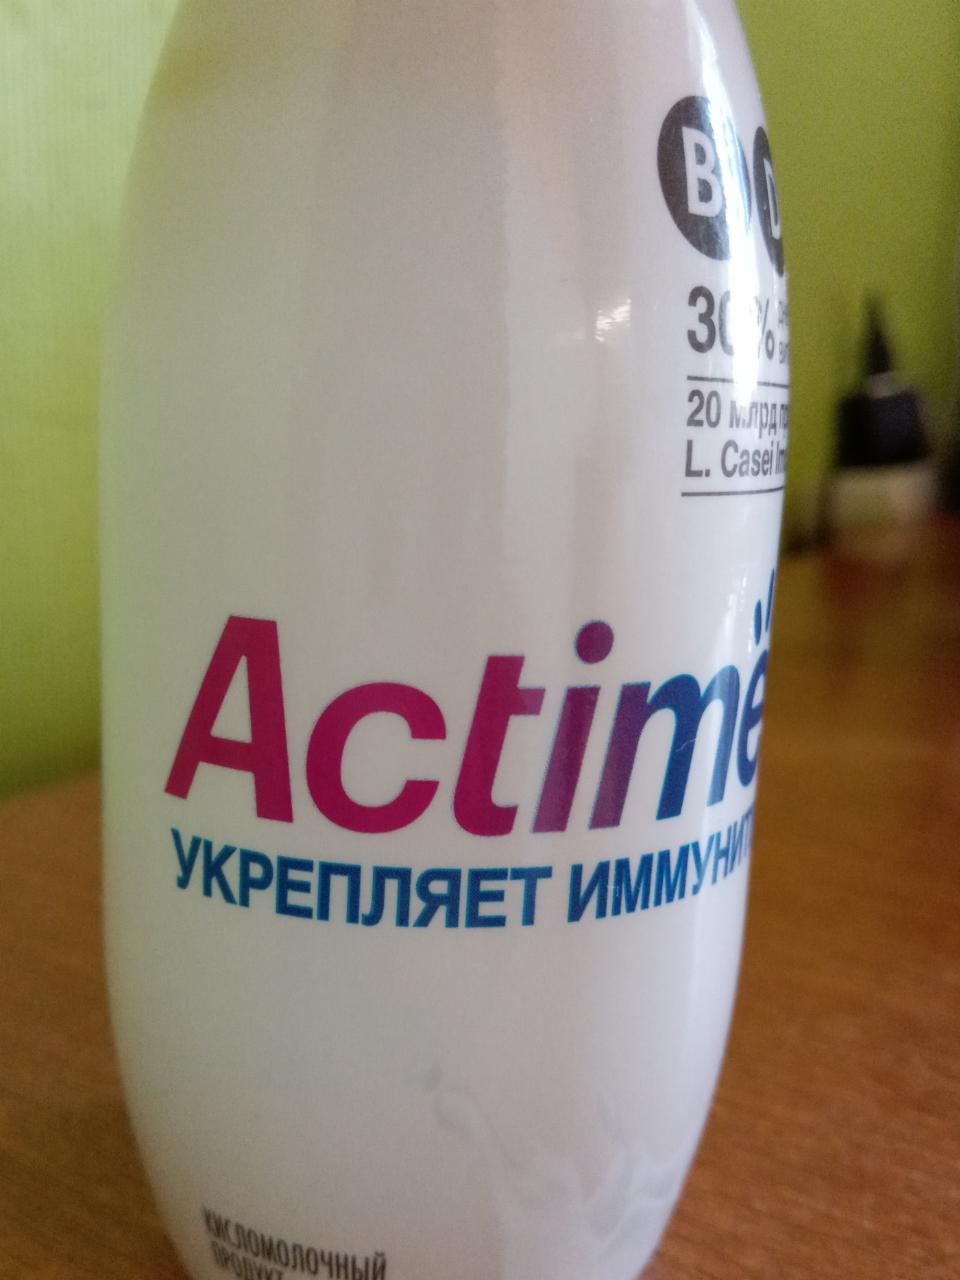 Фото - Продукт кисломолочный с витаминами сладкий Actimel Актимель